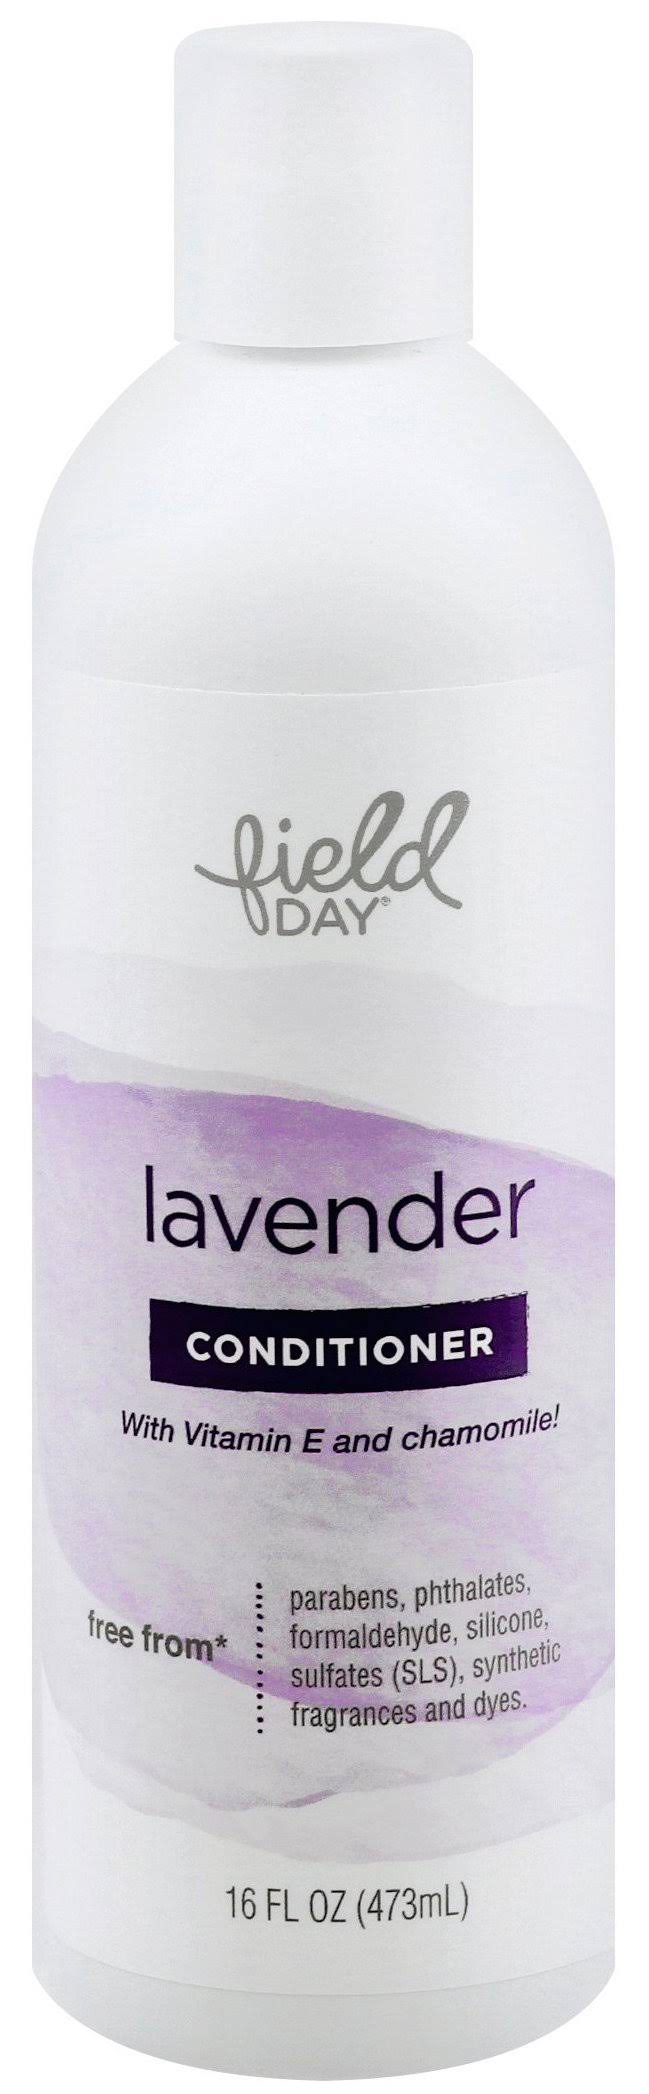 Field Day Conditioner, Lavender - 16 fl oz